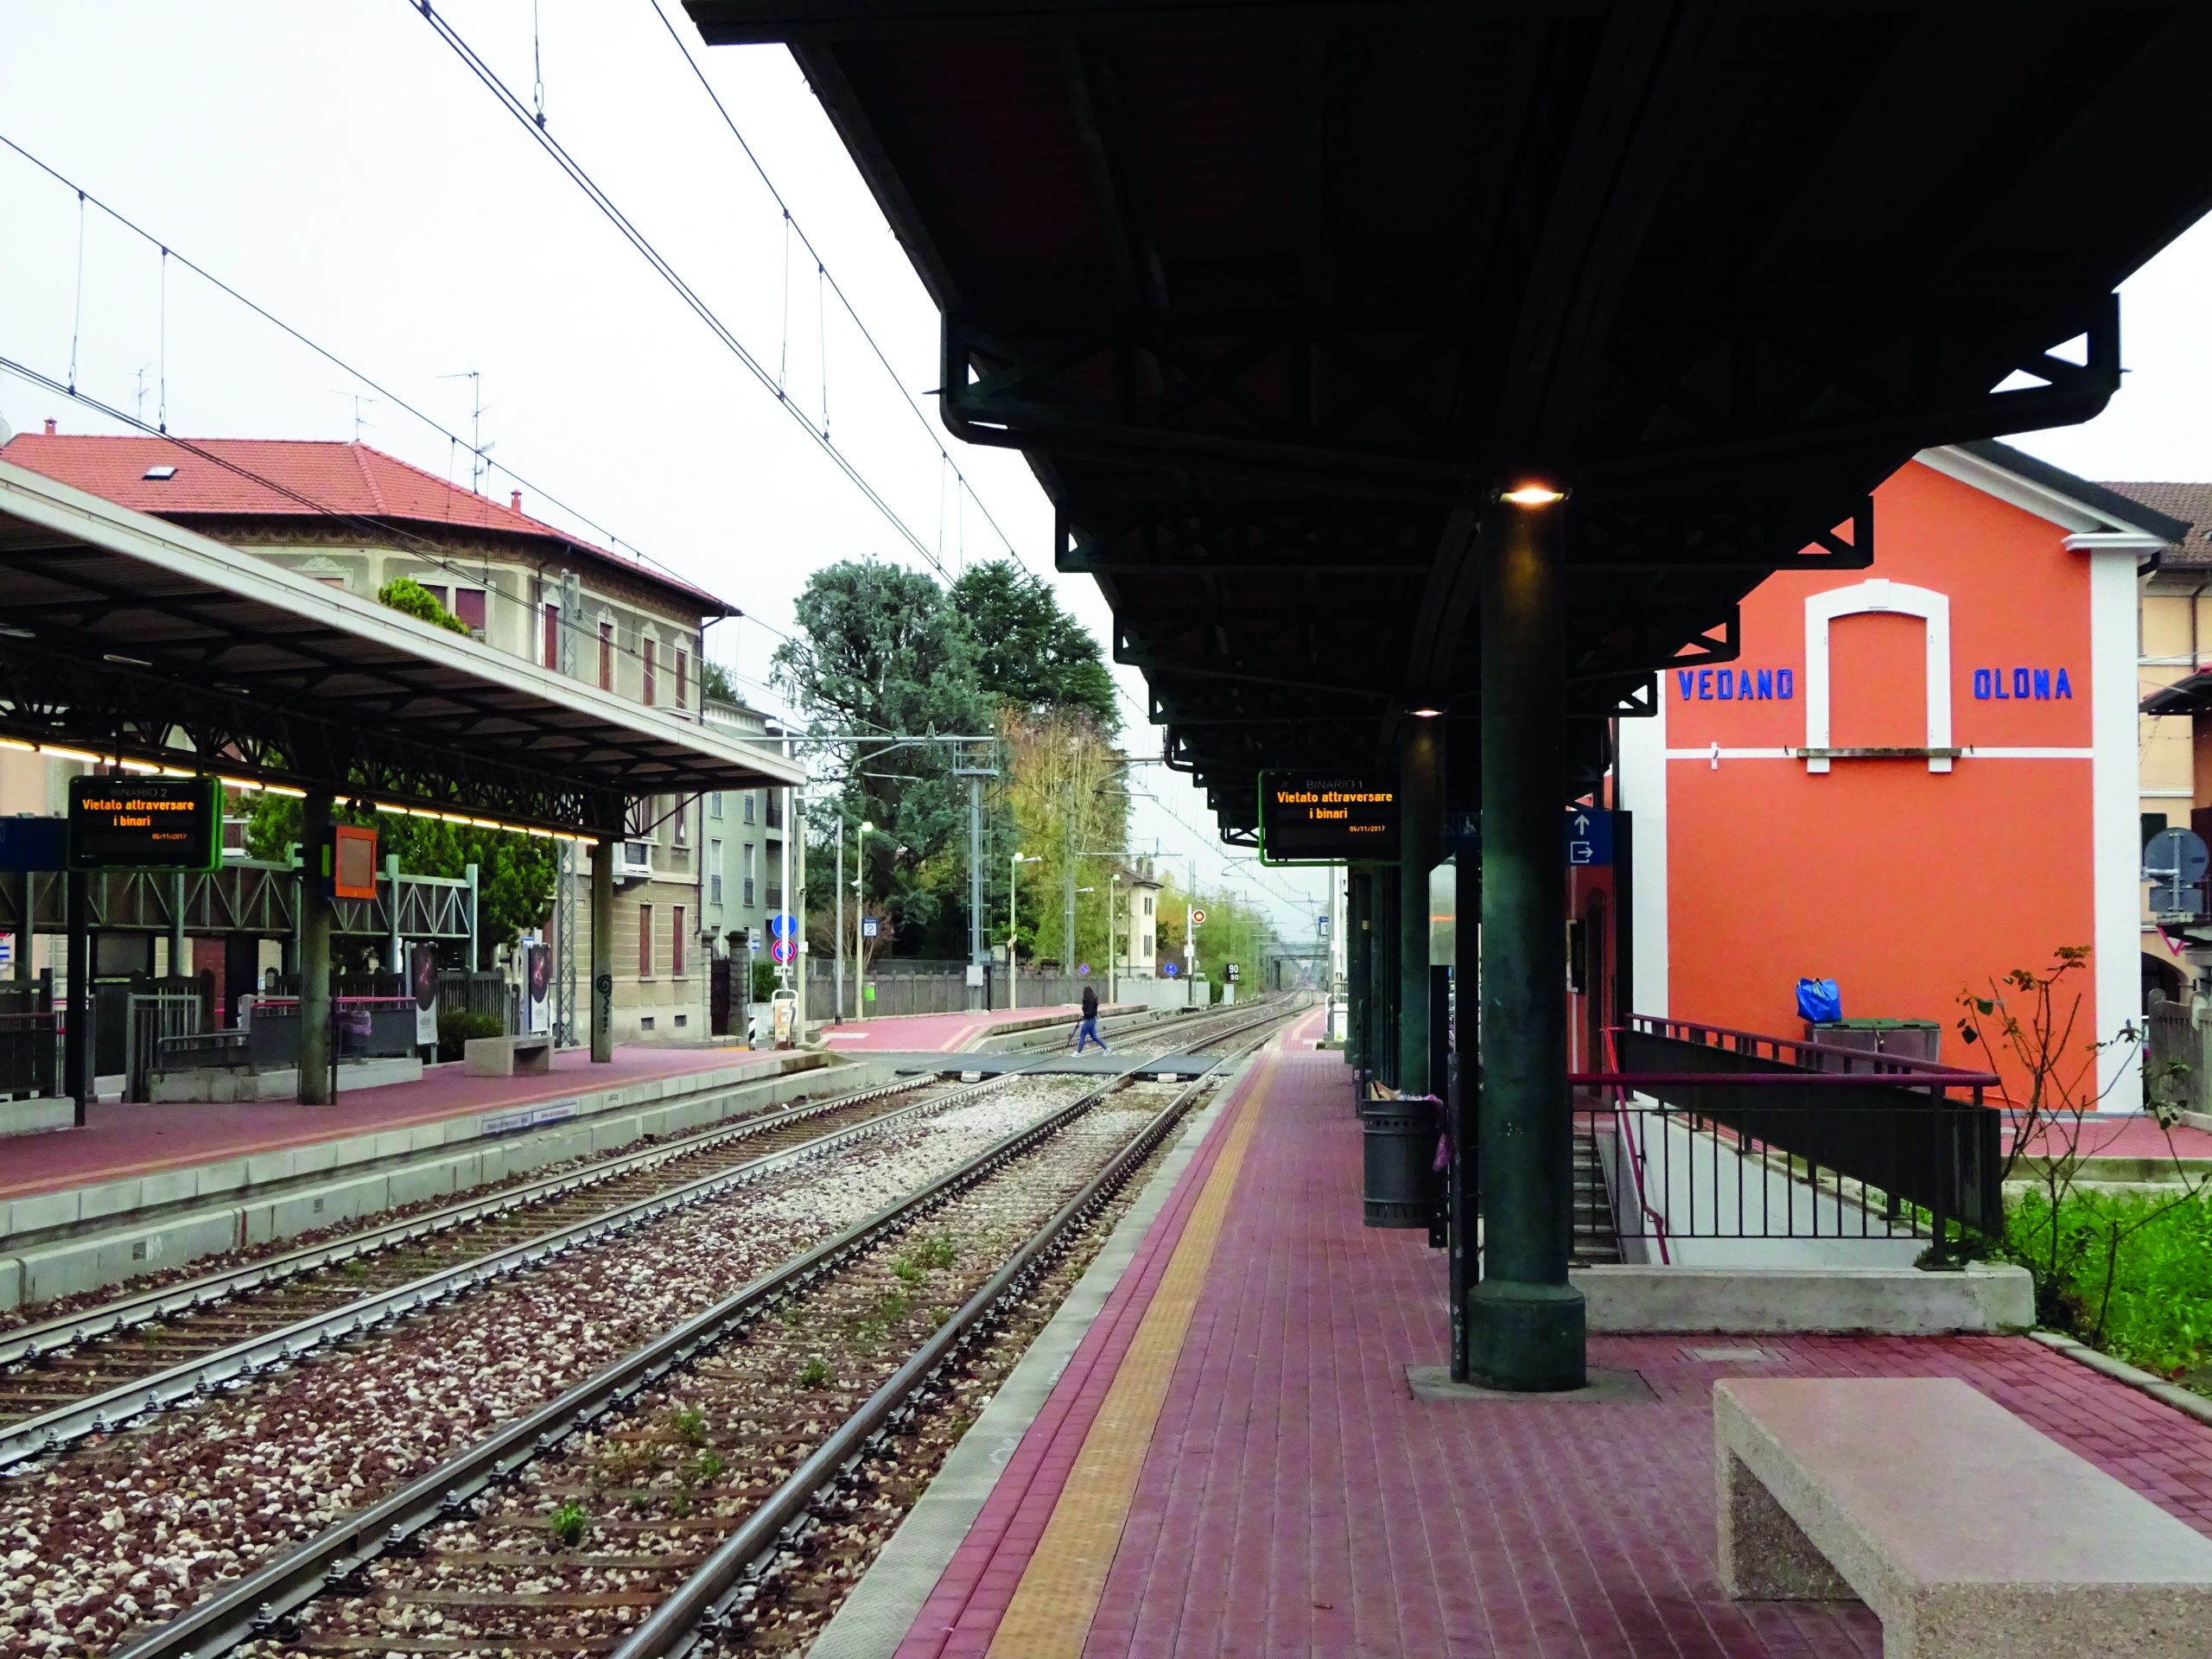 Stazione Vedano-Olona